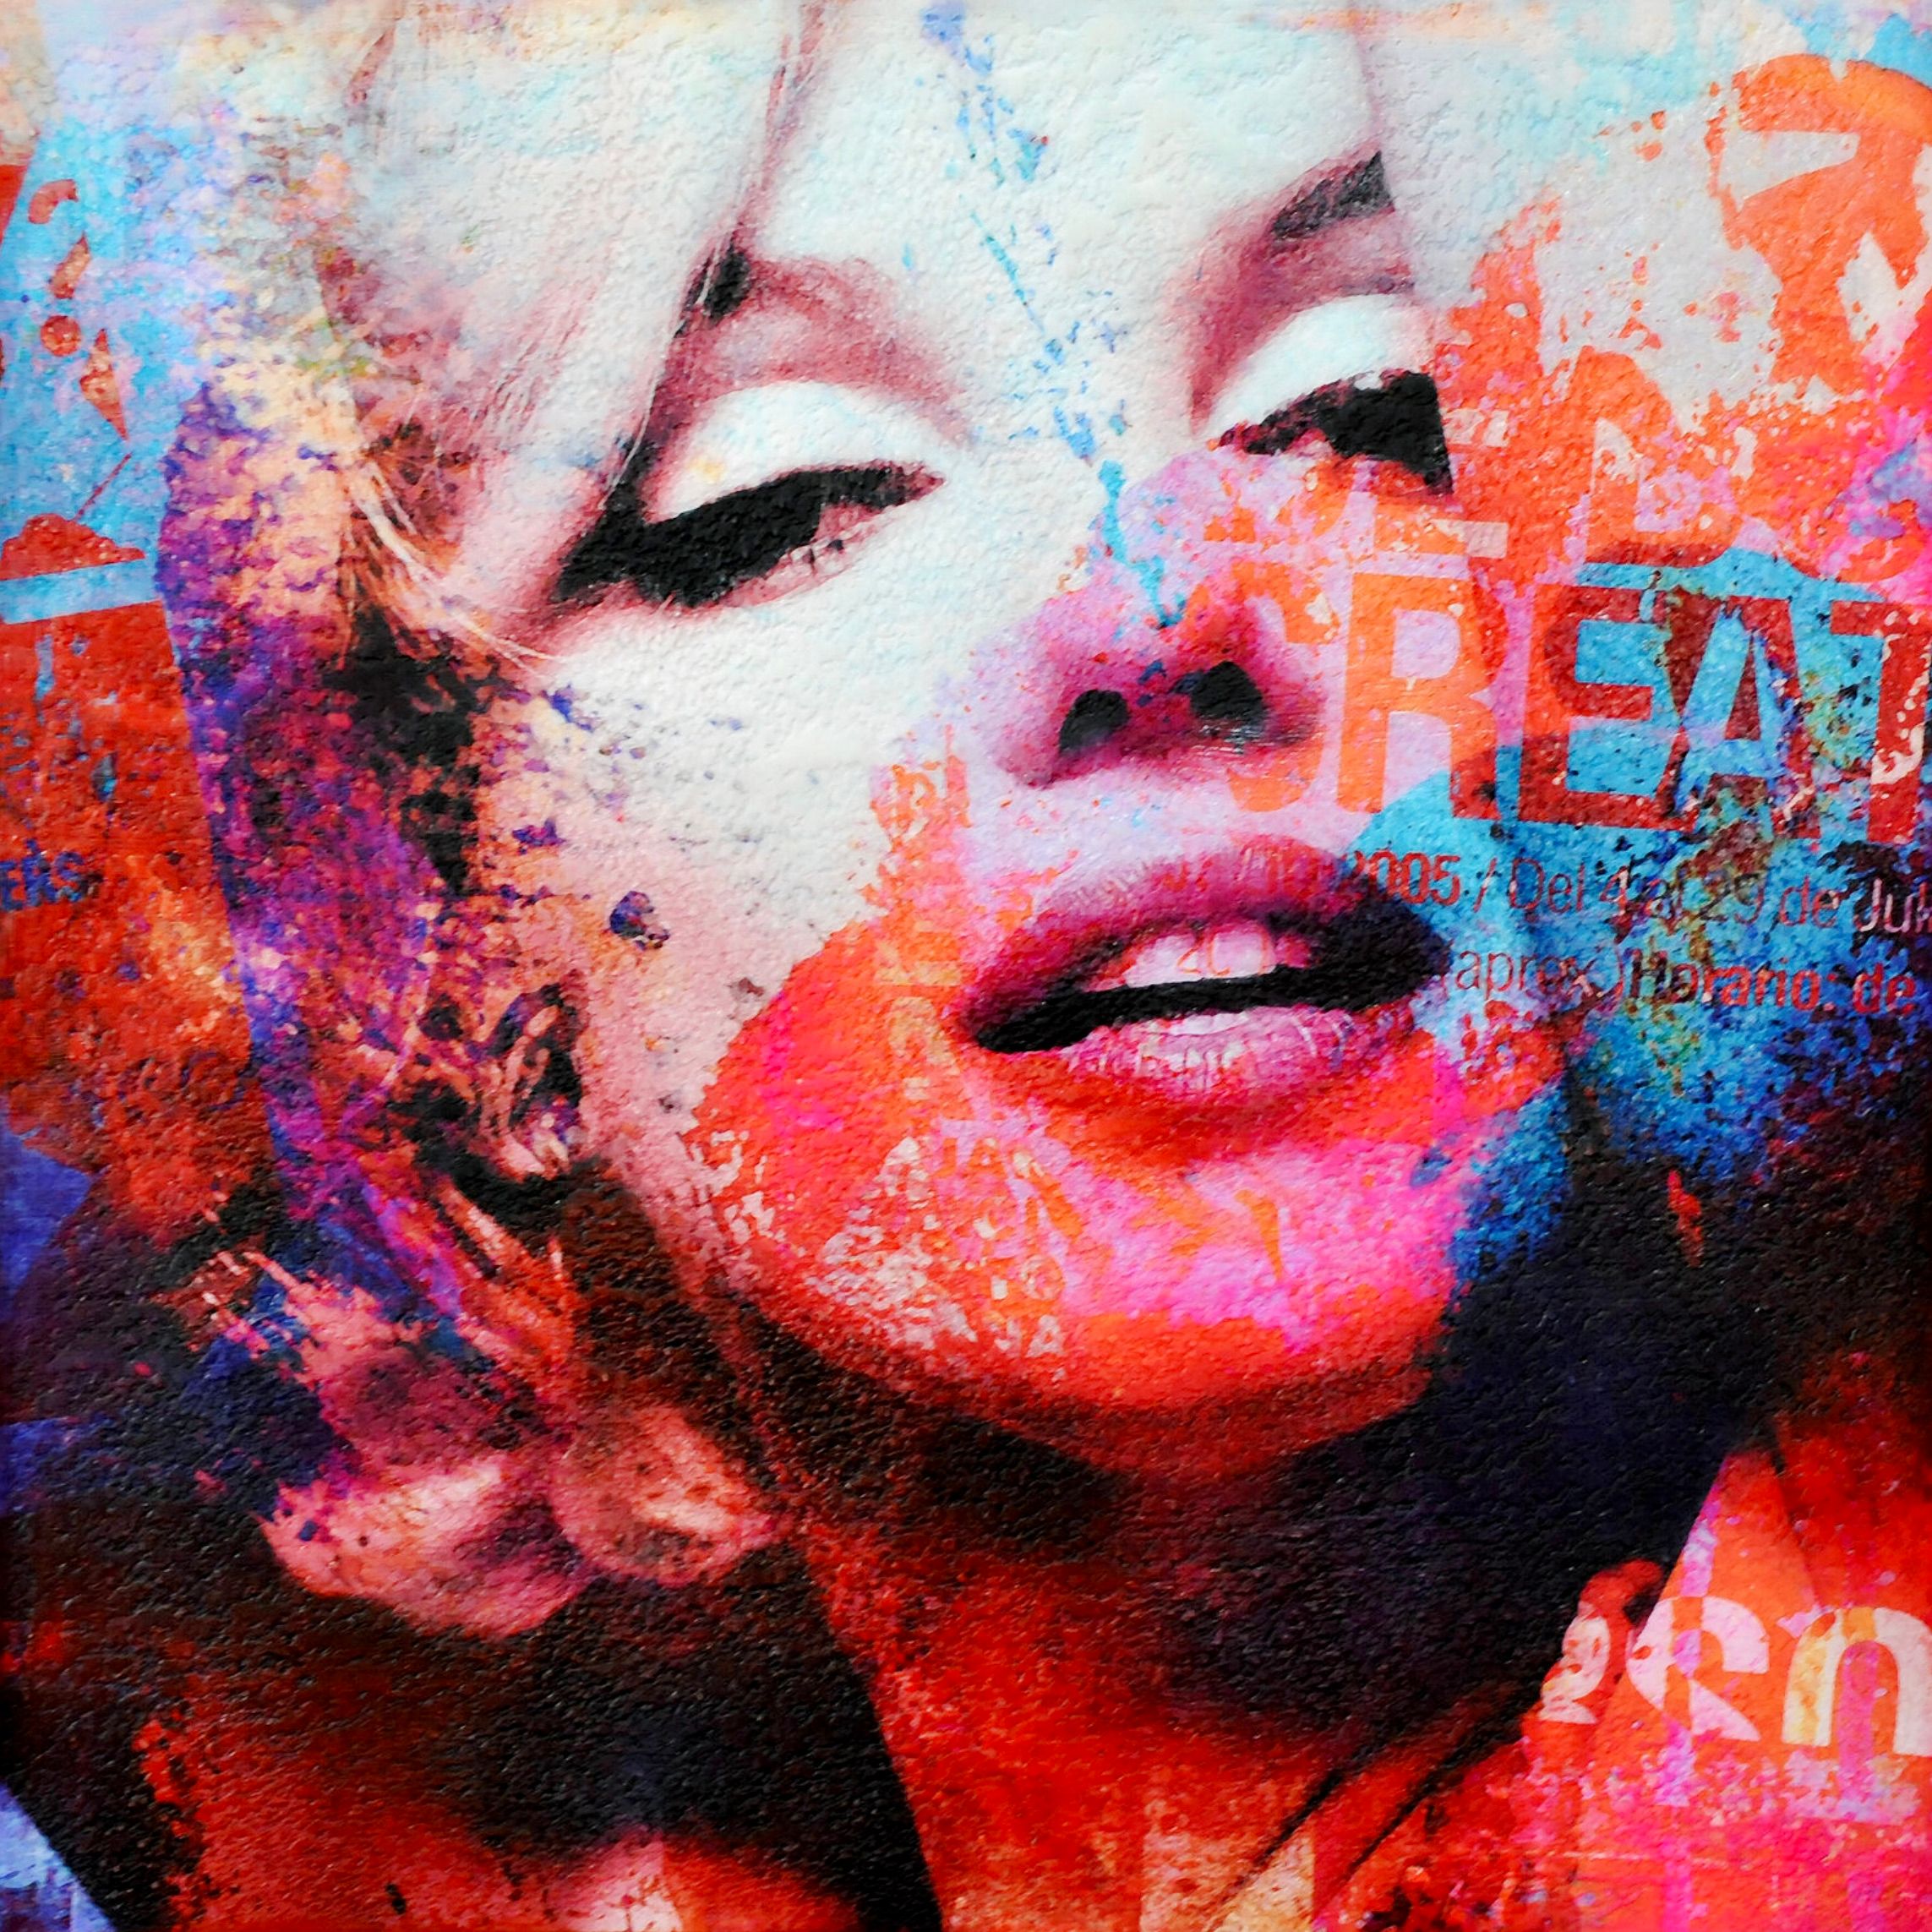 Marilyn Monroe2", de Karin Vermeer, es una combinación y procesamiento digital de fotografías, pinturas y collages en nuevas obras originales en color.